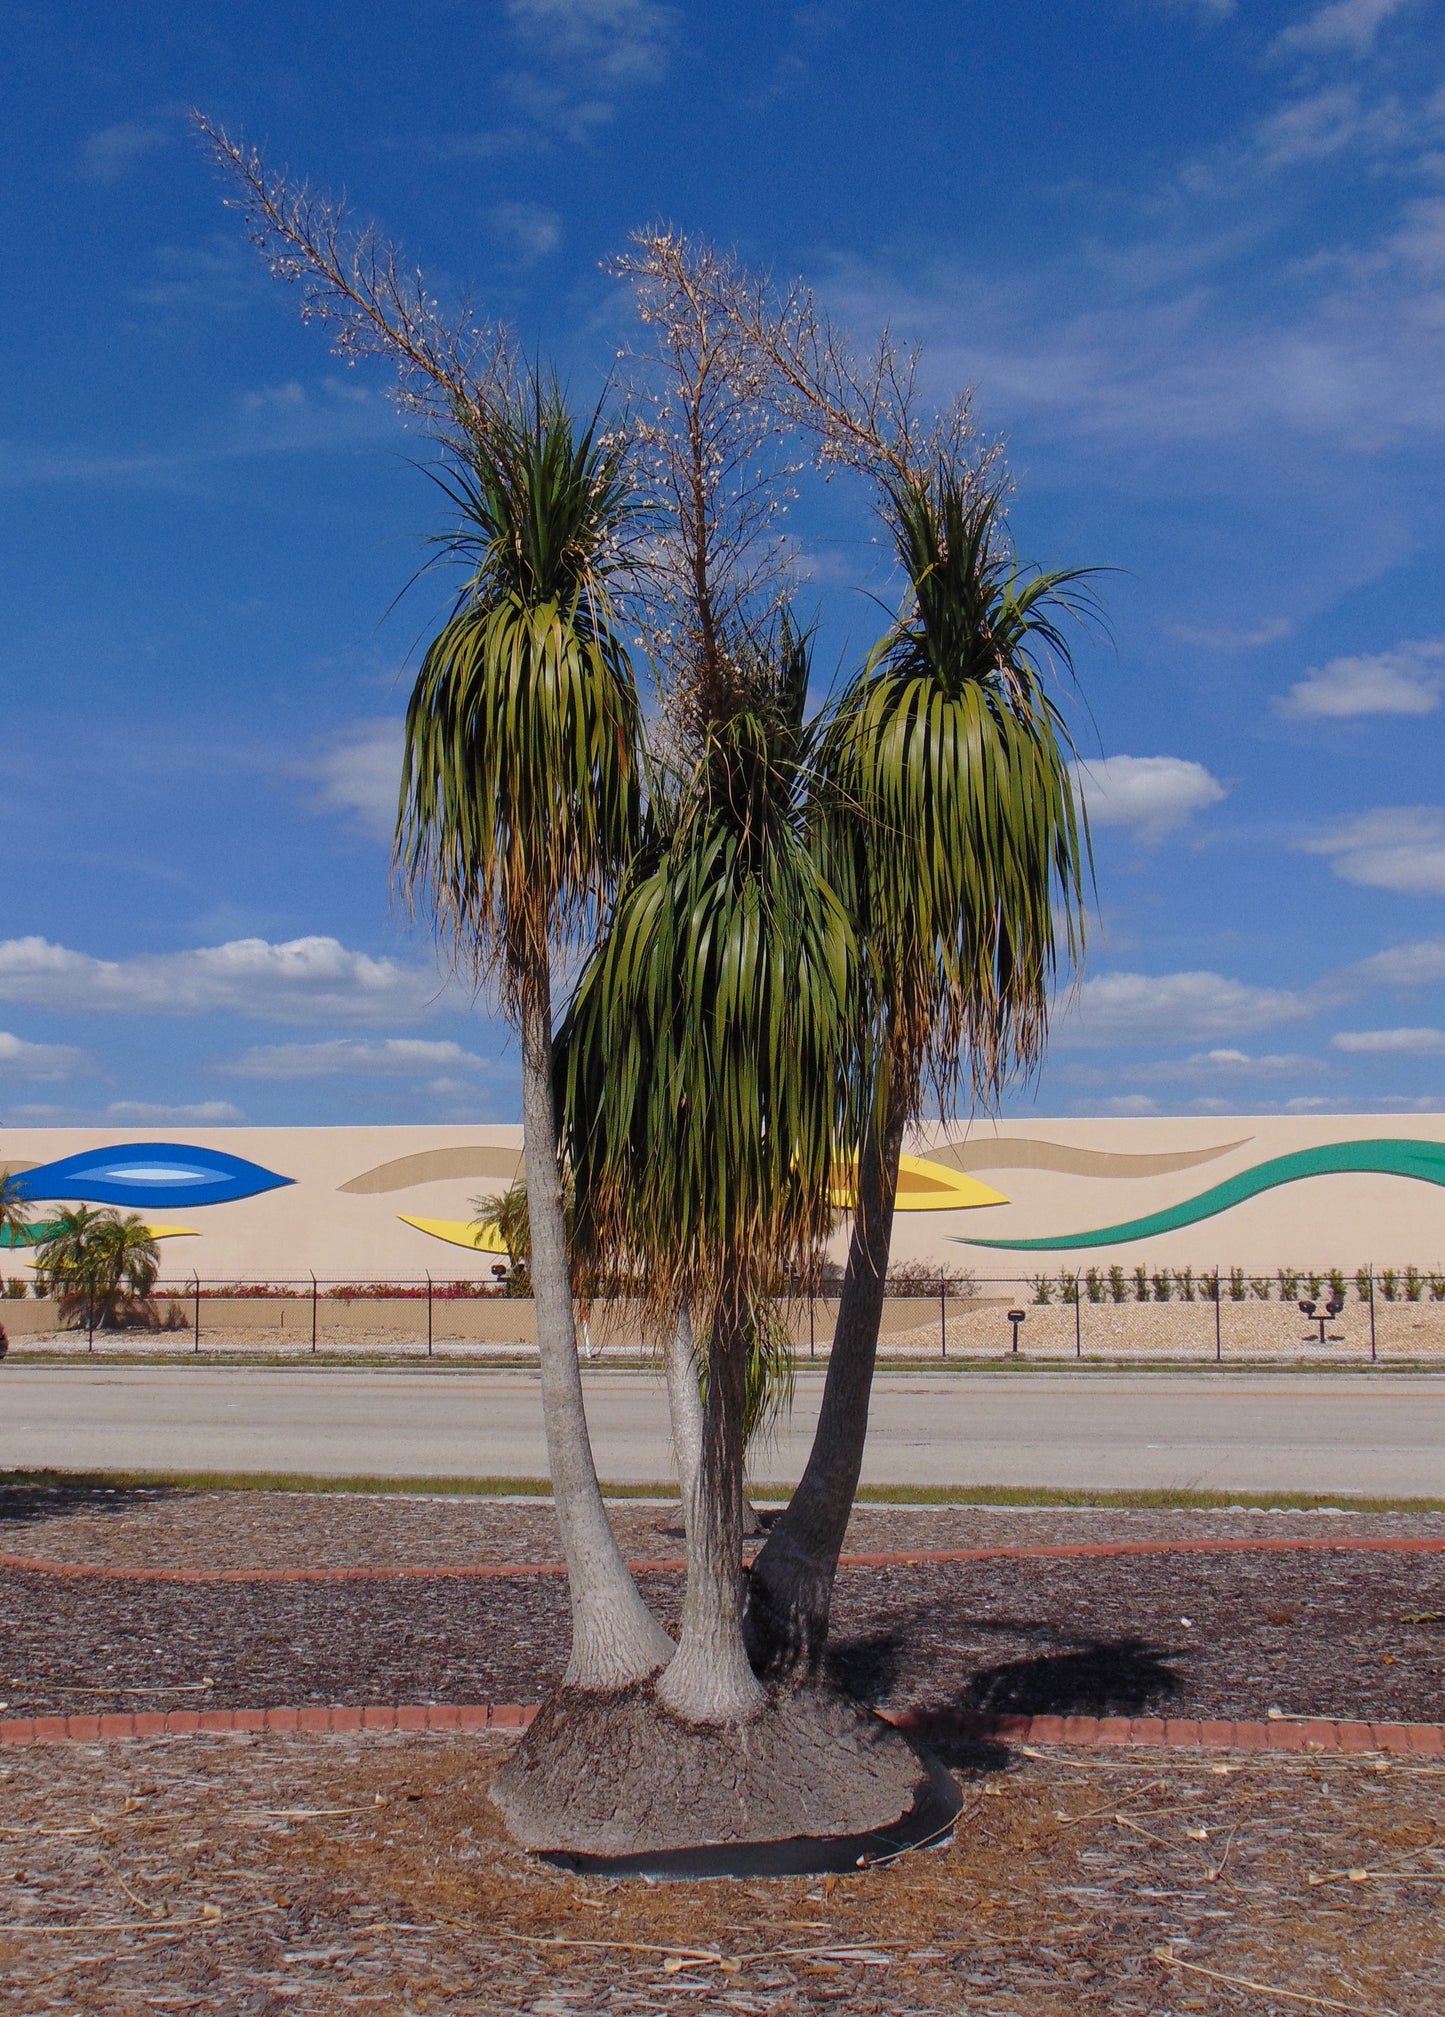 Ponytail Palm Beaucarnea recurvata 50 Seeds  USA Company